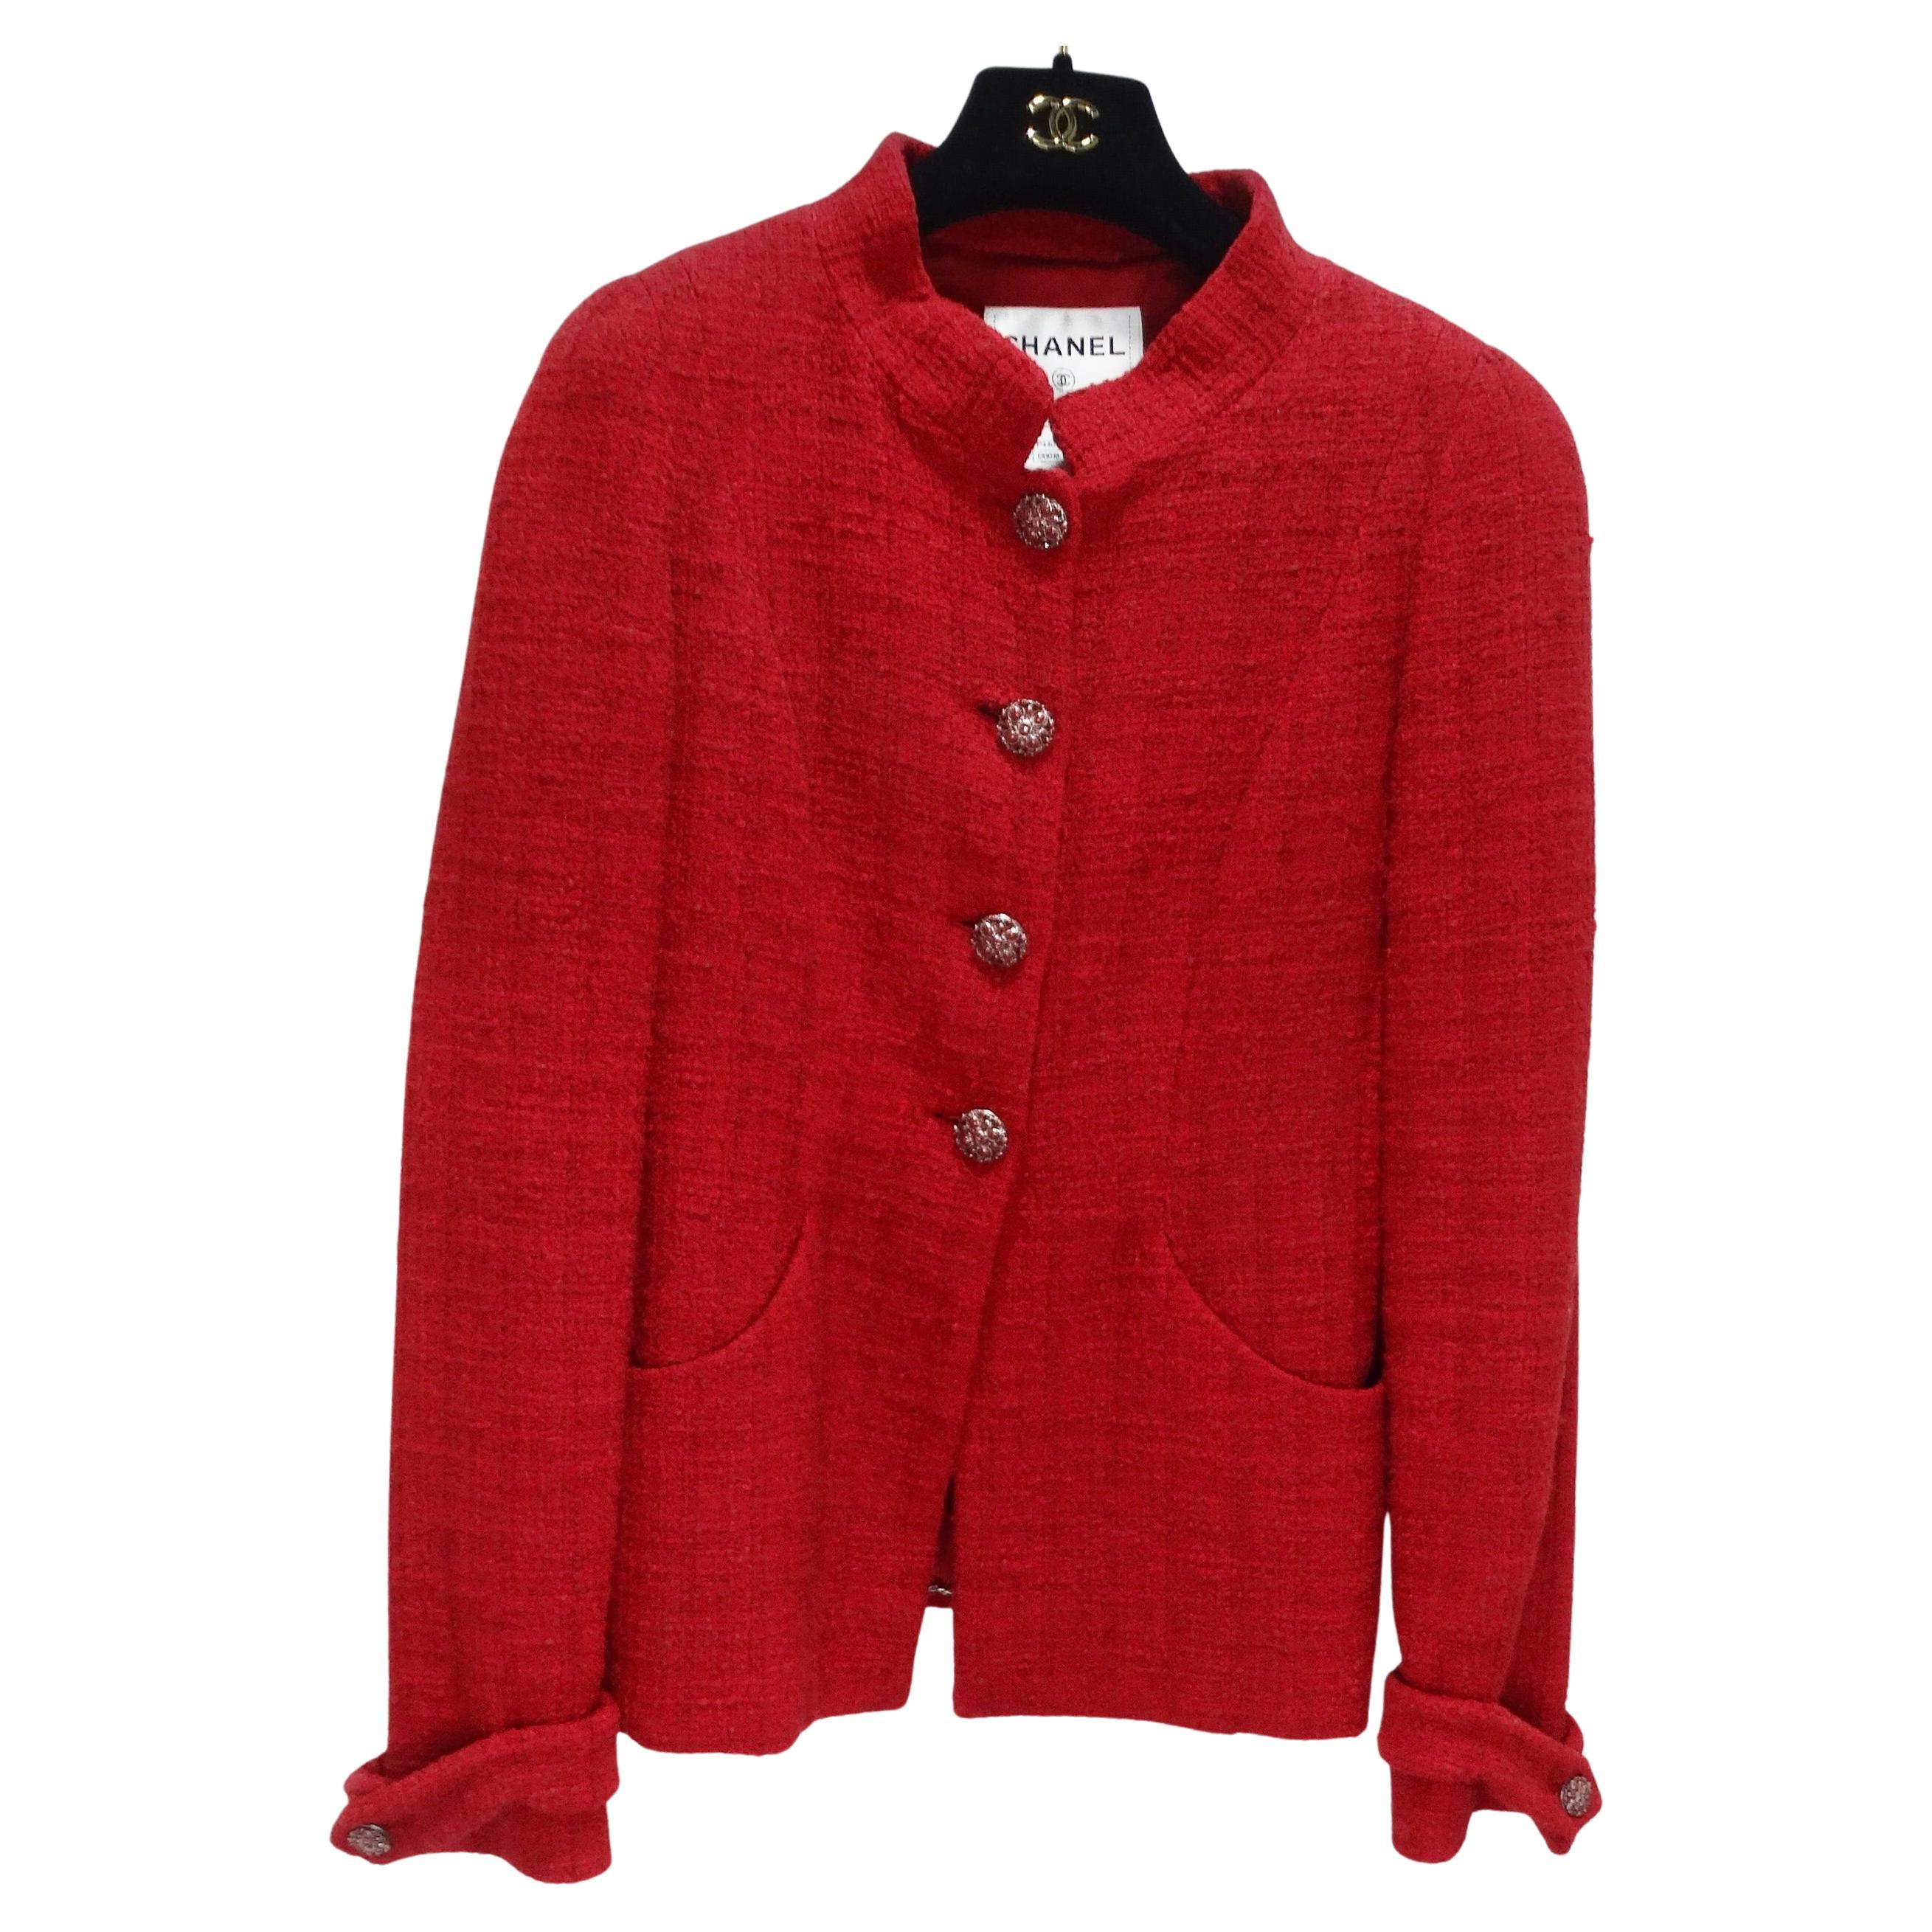 Chanel Métiers d'Art Red Tweed Jacket Blazer For Sale